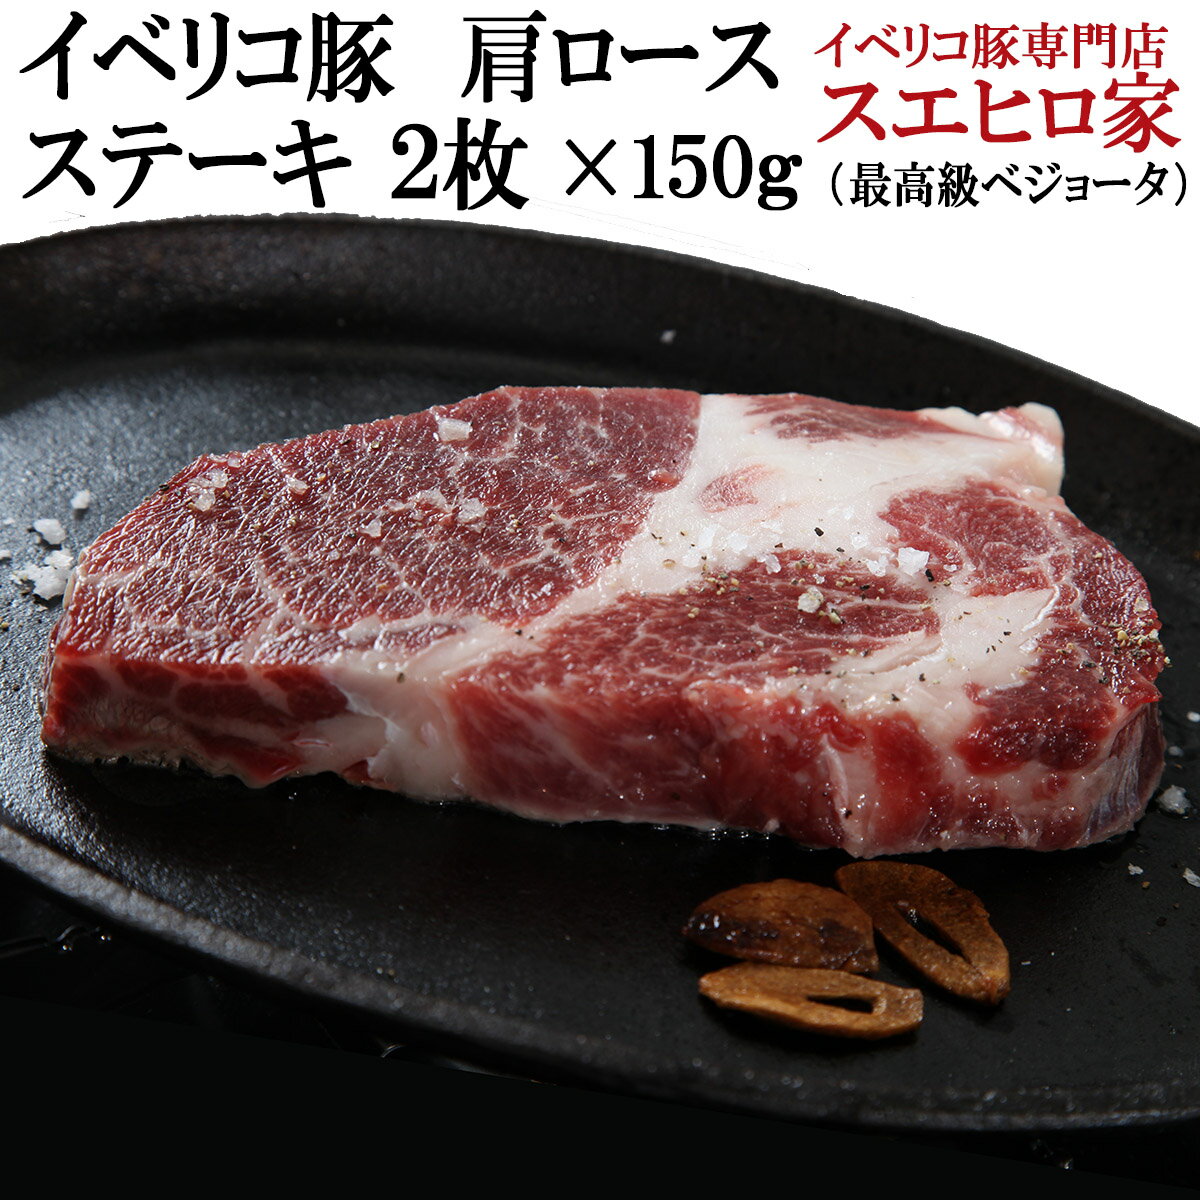 イベリコ豚 肩ロース ステーキ 2枚×